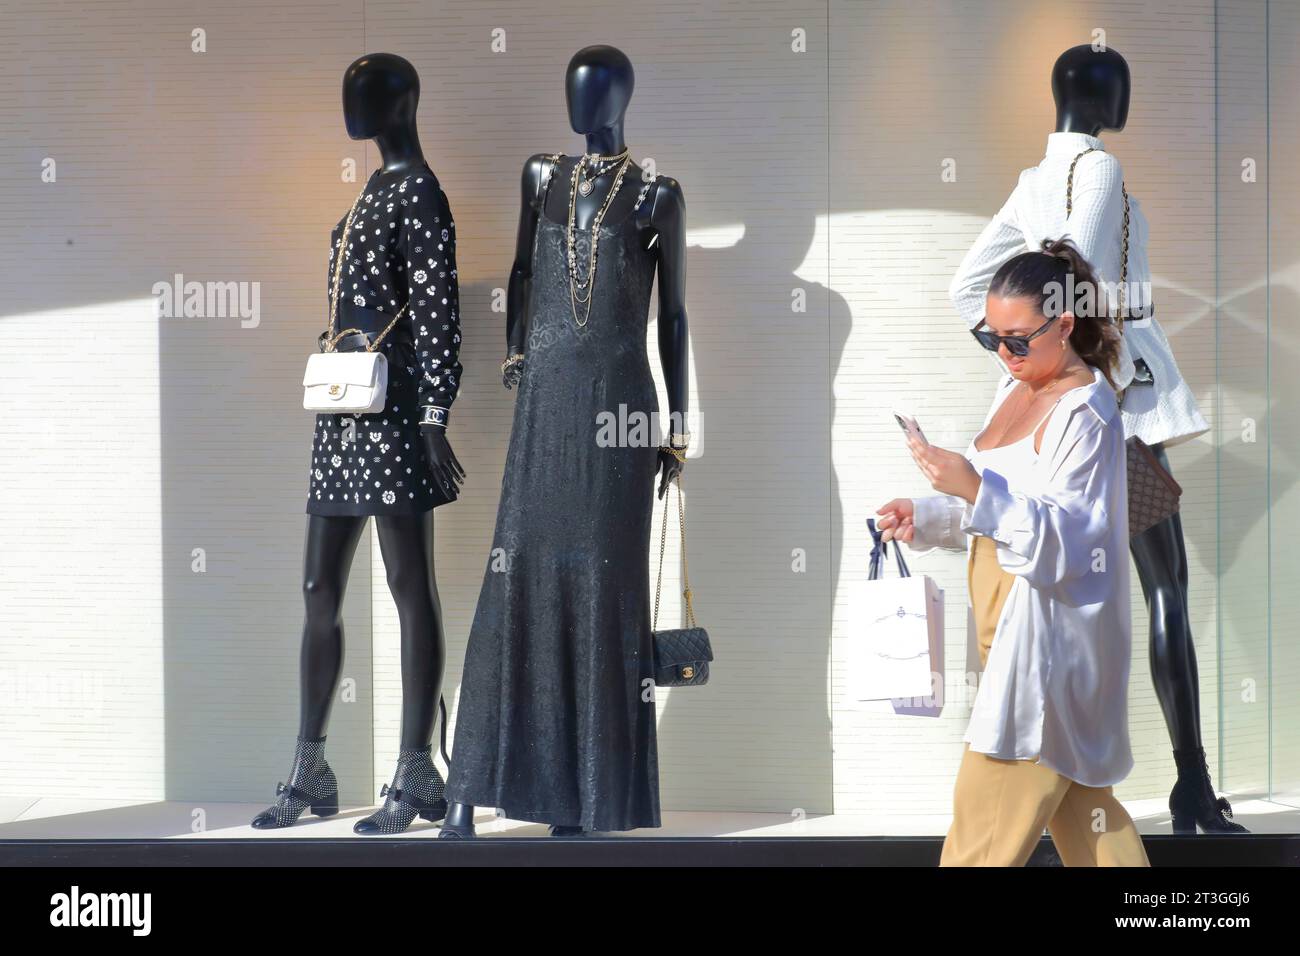 France, Alpes Maritimes, Cannes, Croisette, vitrine de la boutique Chanel haute couture et prêt-à-porter de luxe, mode féminine Banque D'Images